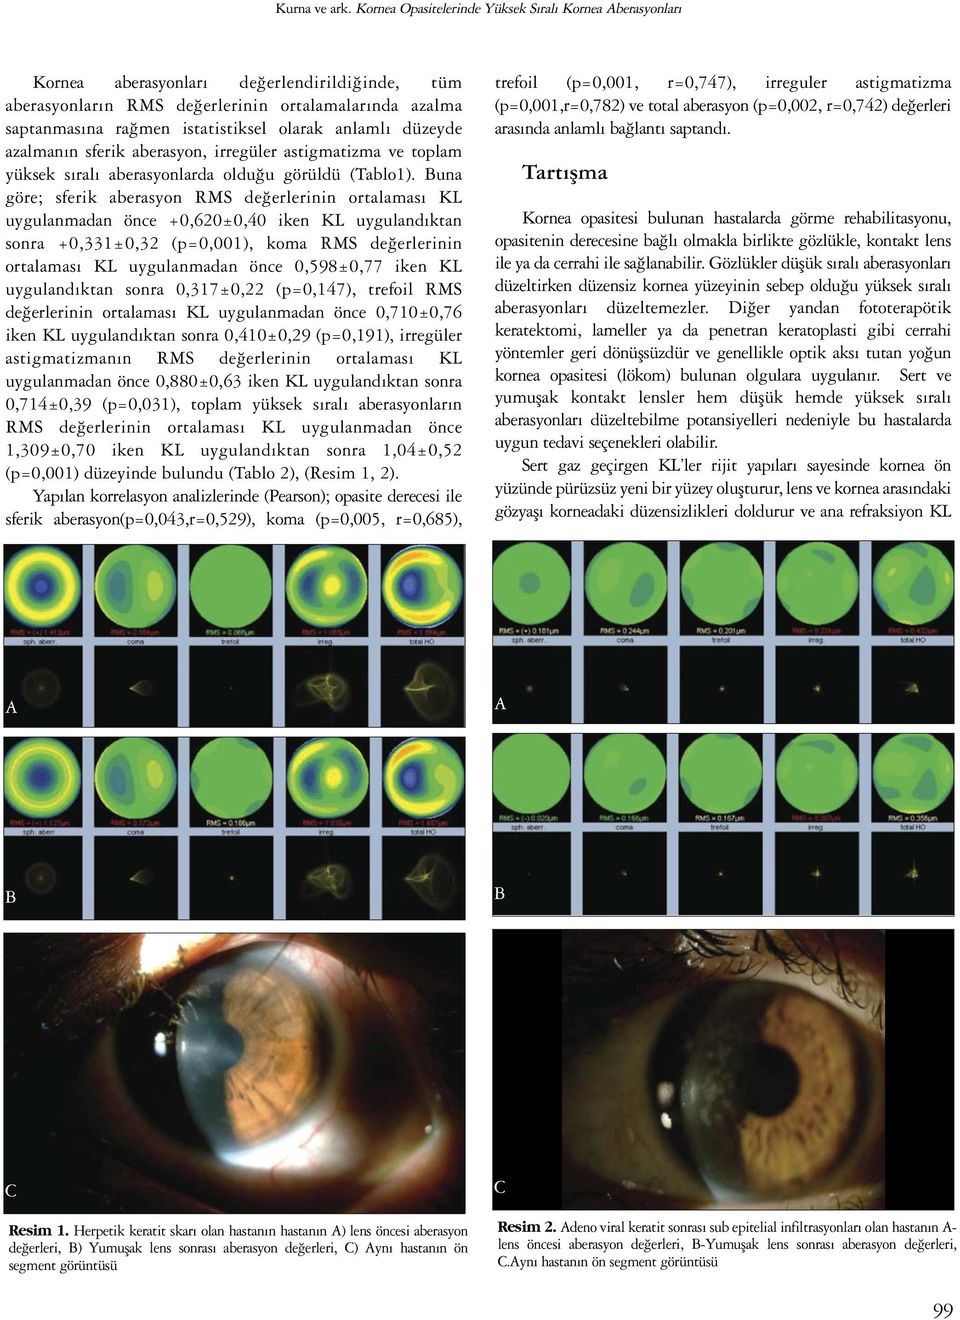 anlamlı düzeyde azalmanın sferik aberasyon, irregüler astigmatizma ve toplam yüksek sıralı aberasyonlarda olduğu görüldü (Tablo1).